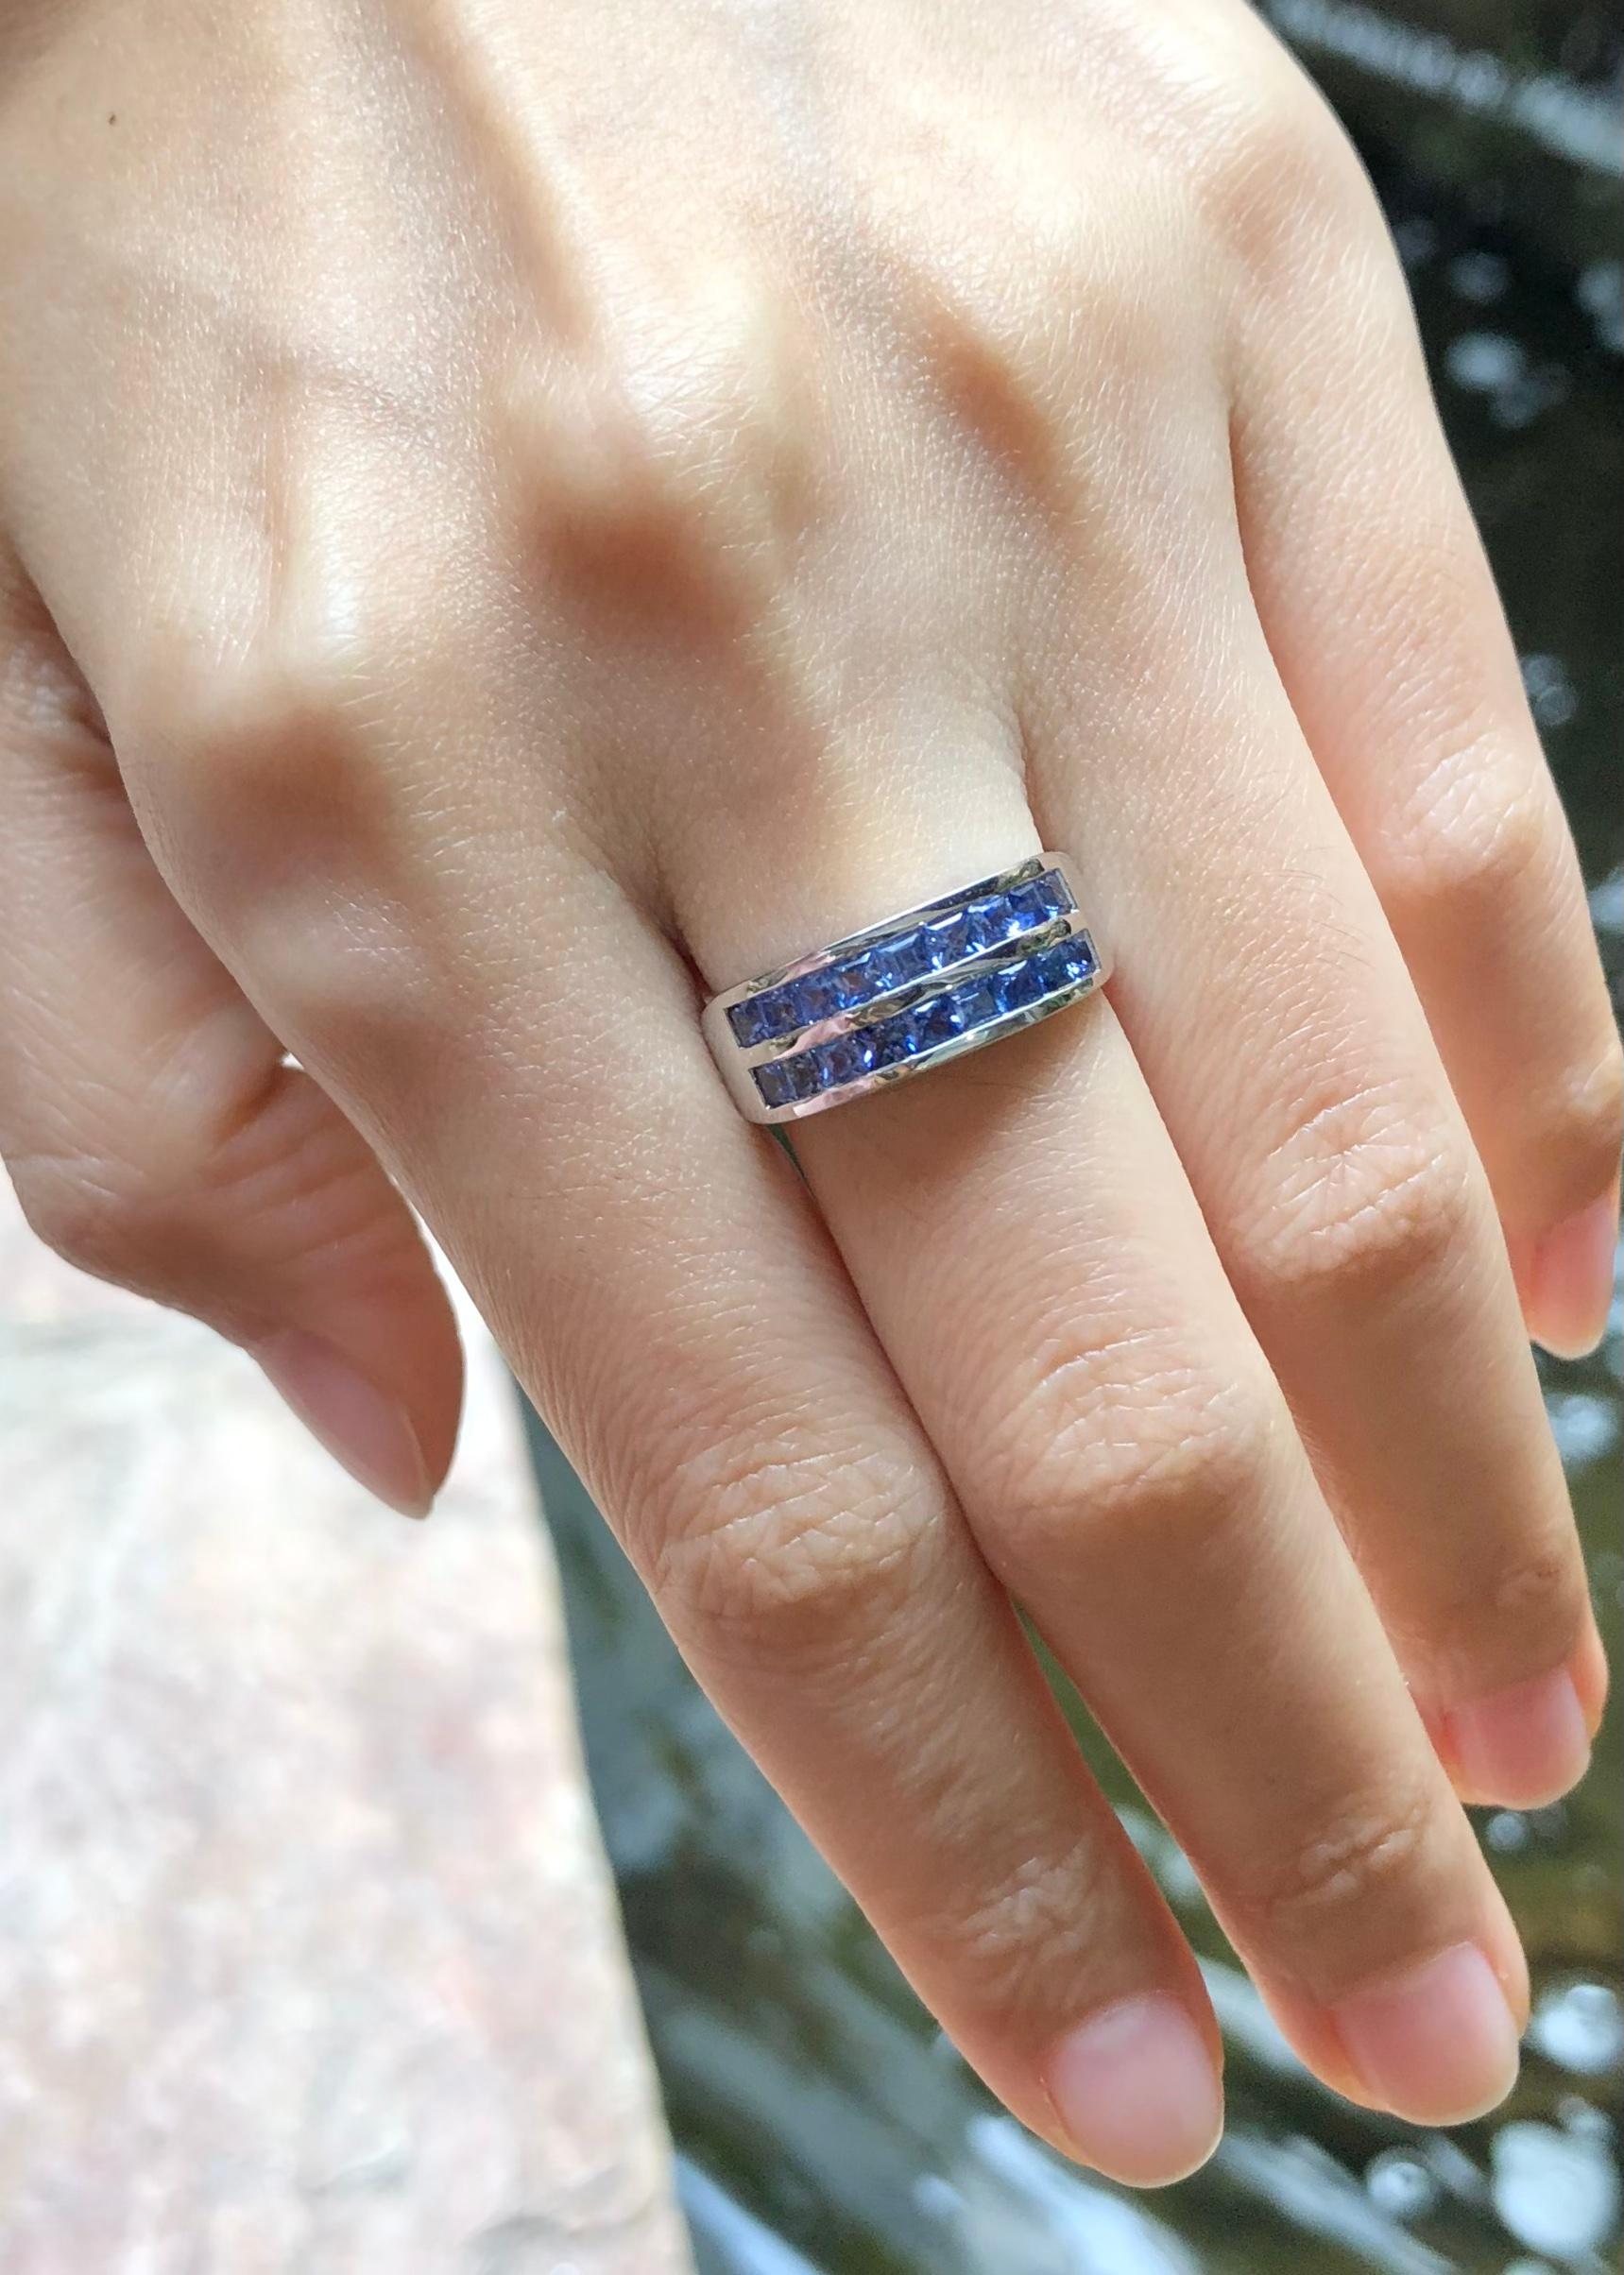 Blauer Saphir  Ring in Silberfassung gefasst

Breite:  1,8 cm 
Länge: 0,7 cm
Ringgröße: 55
Gesamtgewicht: 4,59 Gramm

Bitte beachten Sie, dass die Silberfassung mit Rhodium versehen ist, um den Glanz zu fördern und die Oxidation zu verhindern.  Aber